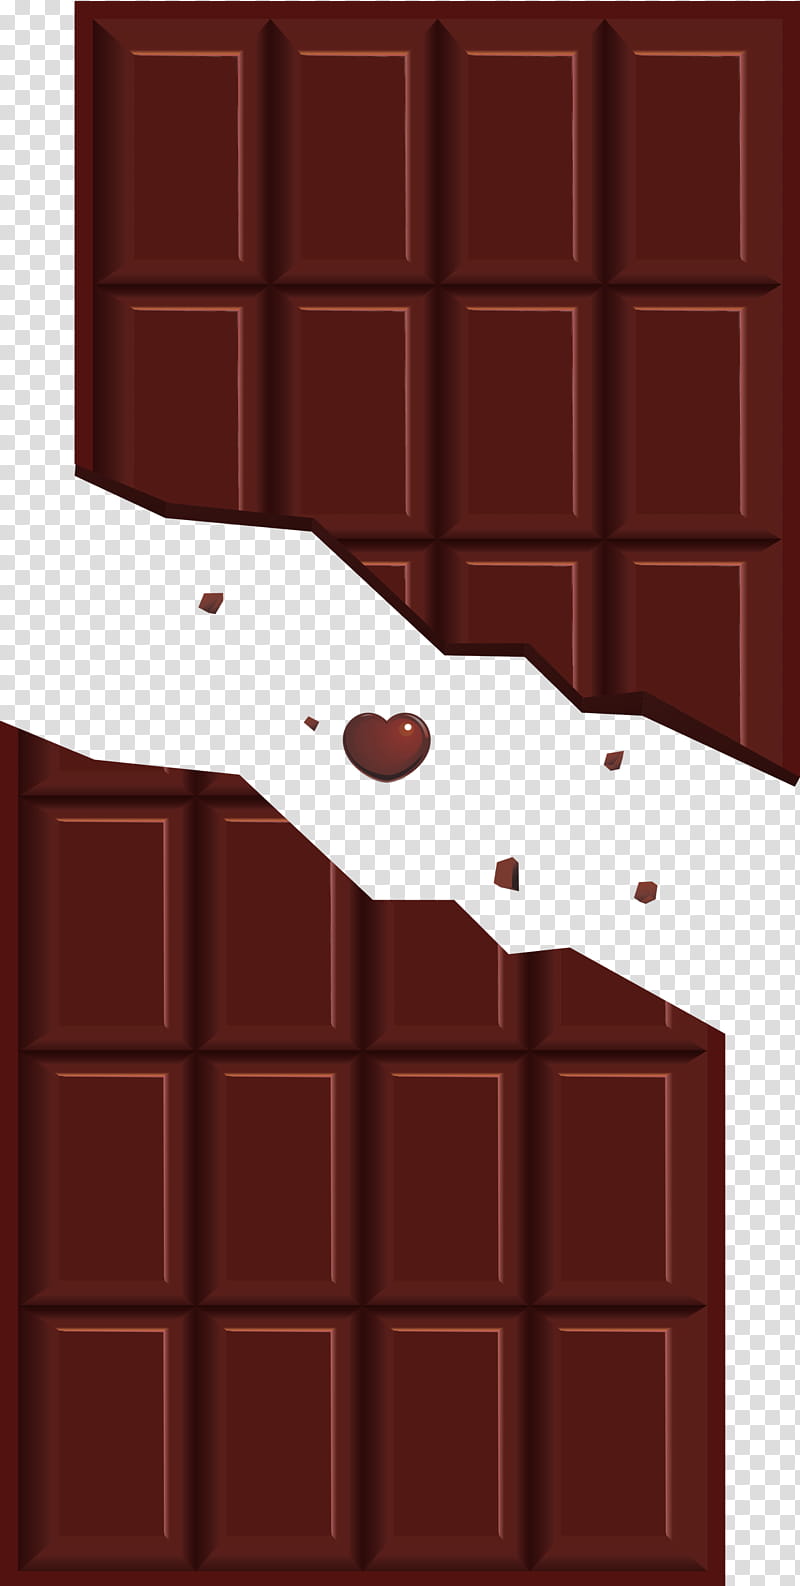 kawaii chocolate bar opened chocolate bar unwrapped chocolate bar, Cute Chocolate Bar, Red, Brown, Wall, Brick, Door, Games transparent background PNG clipart